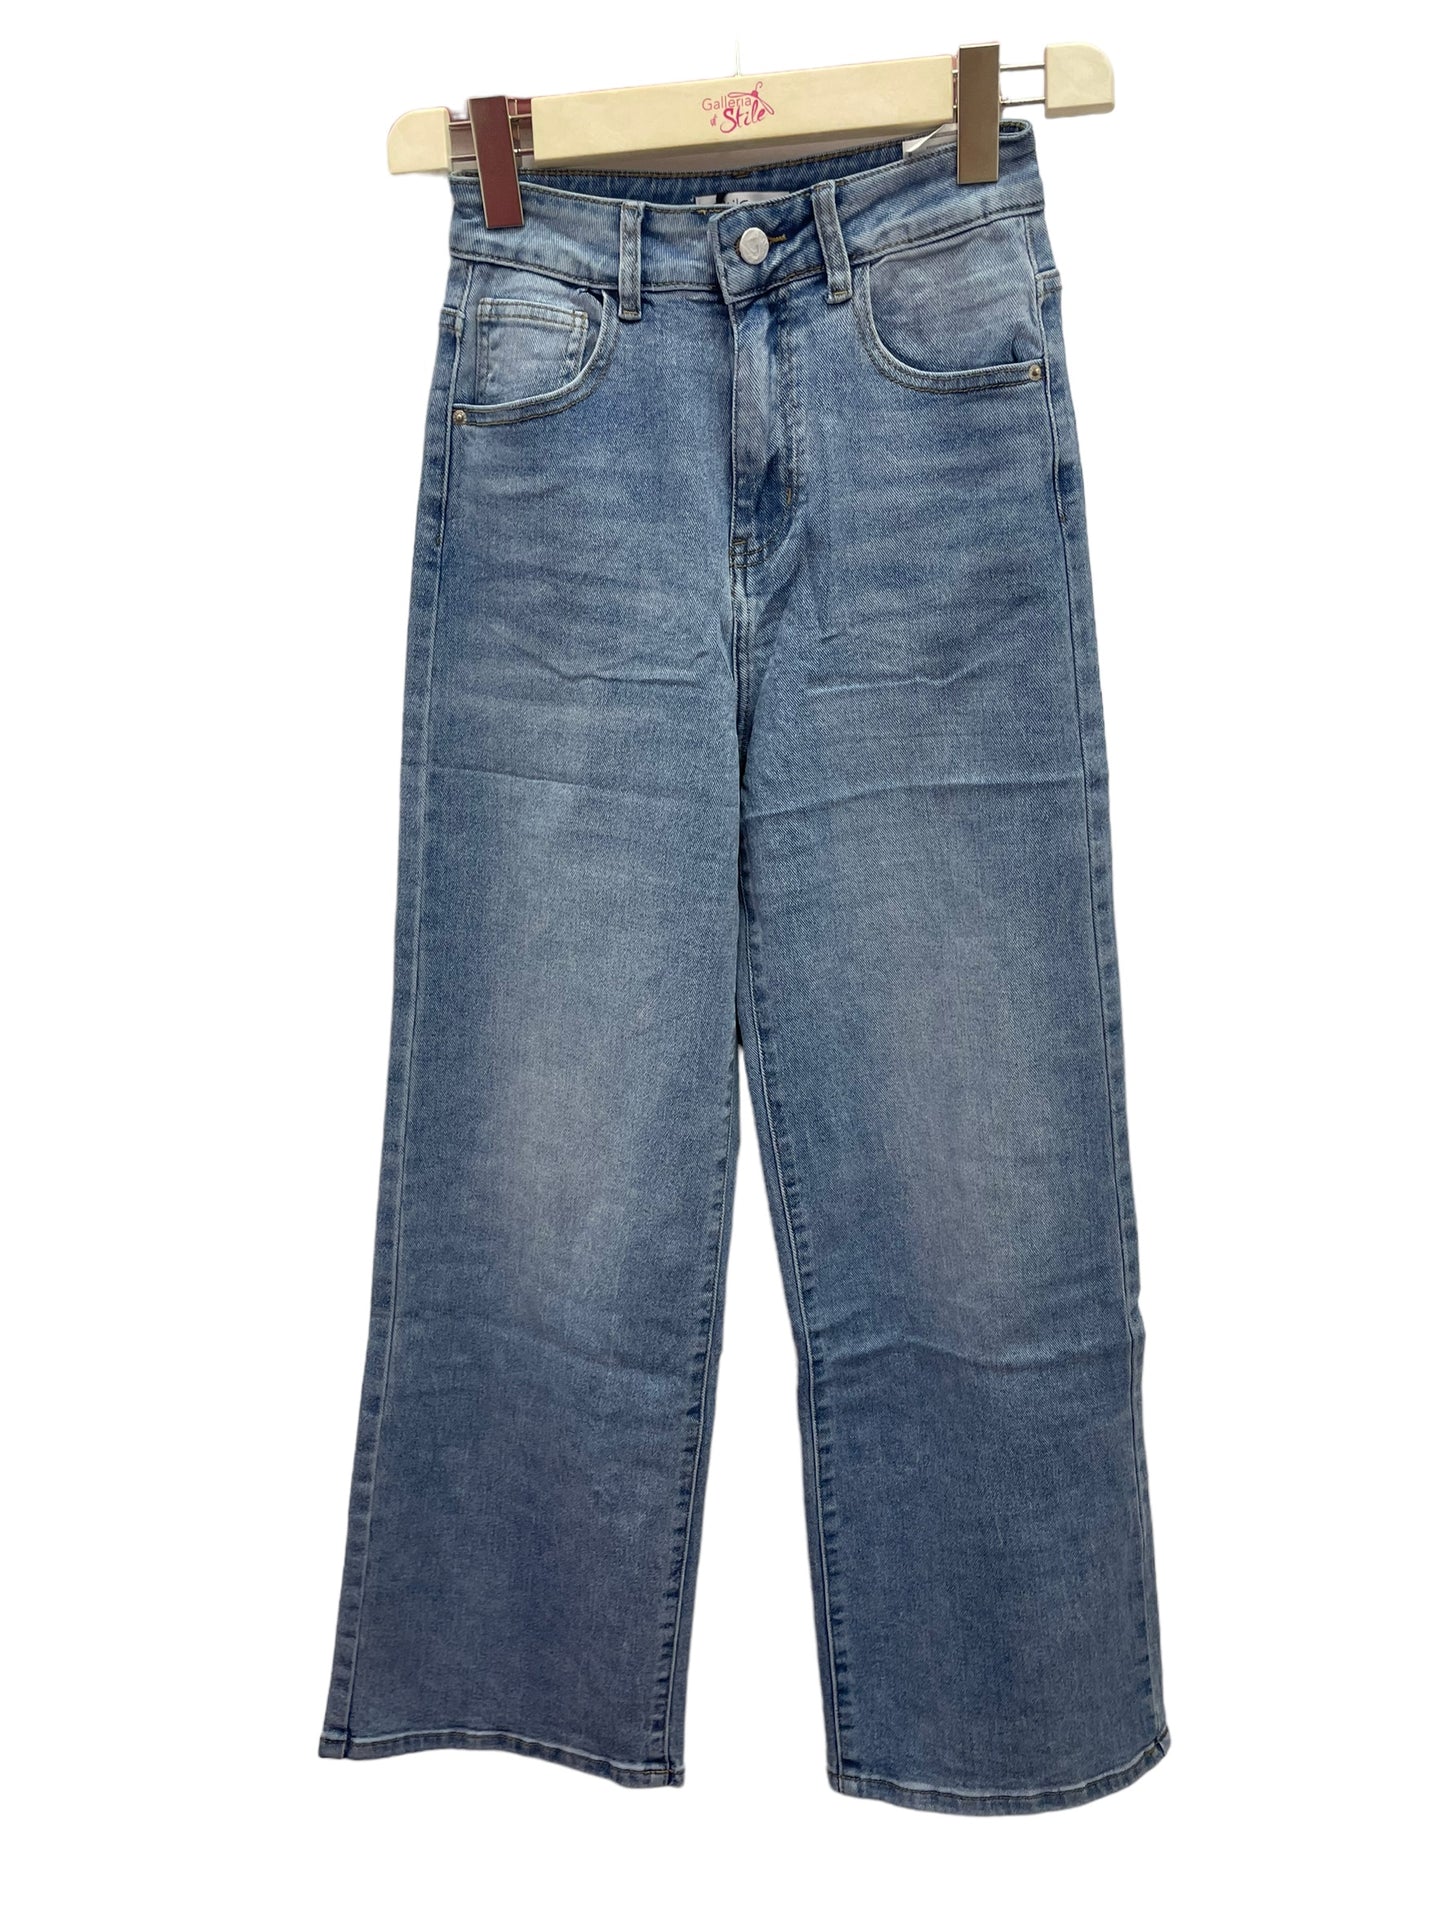 Jeans palazzo chiaro - abbigliamento - Stilosa